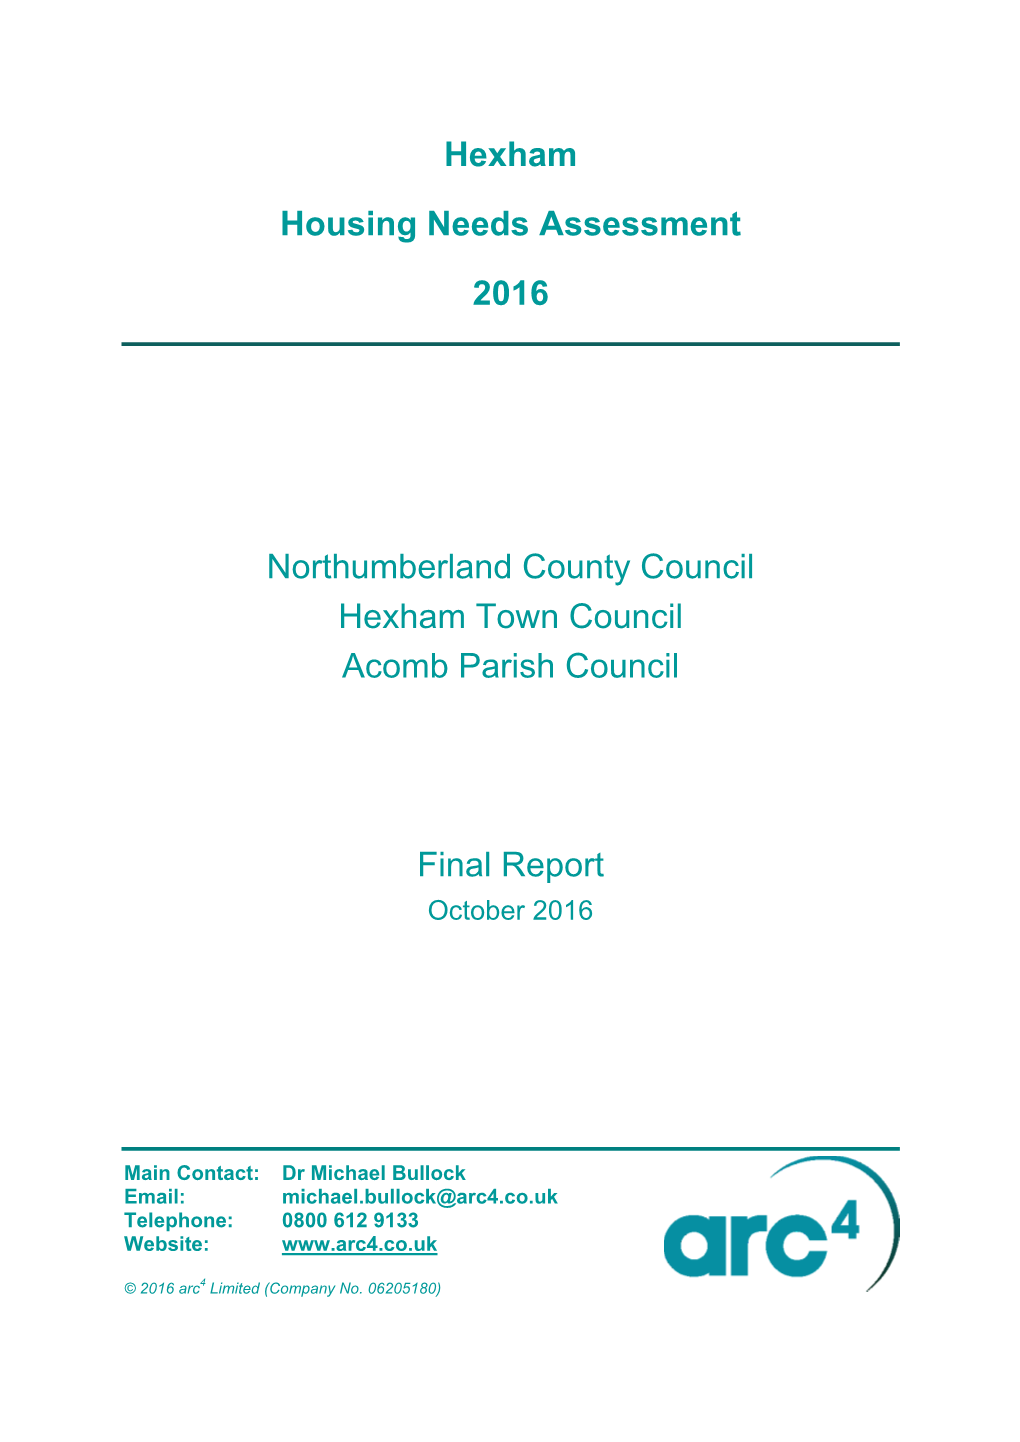 Hexham Housing Needs Assessment (October 2016)